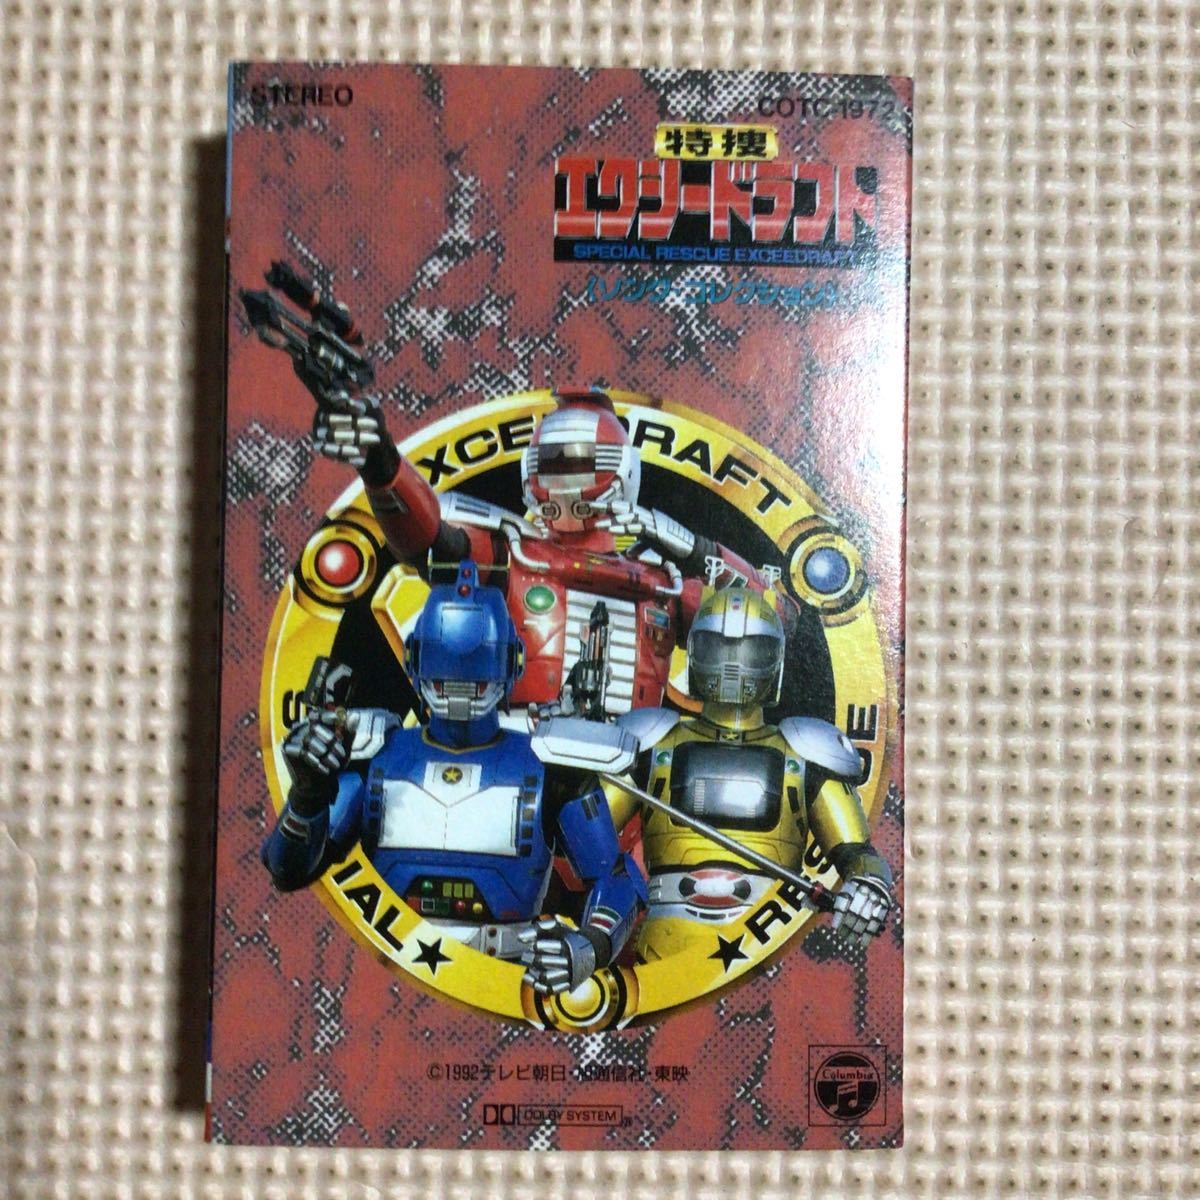  Tokusou Exceedraft song* коллекция записано в Японии кассетная лента 